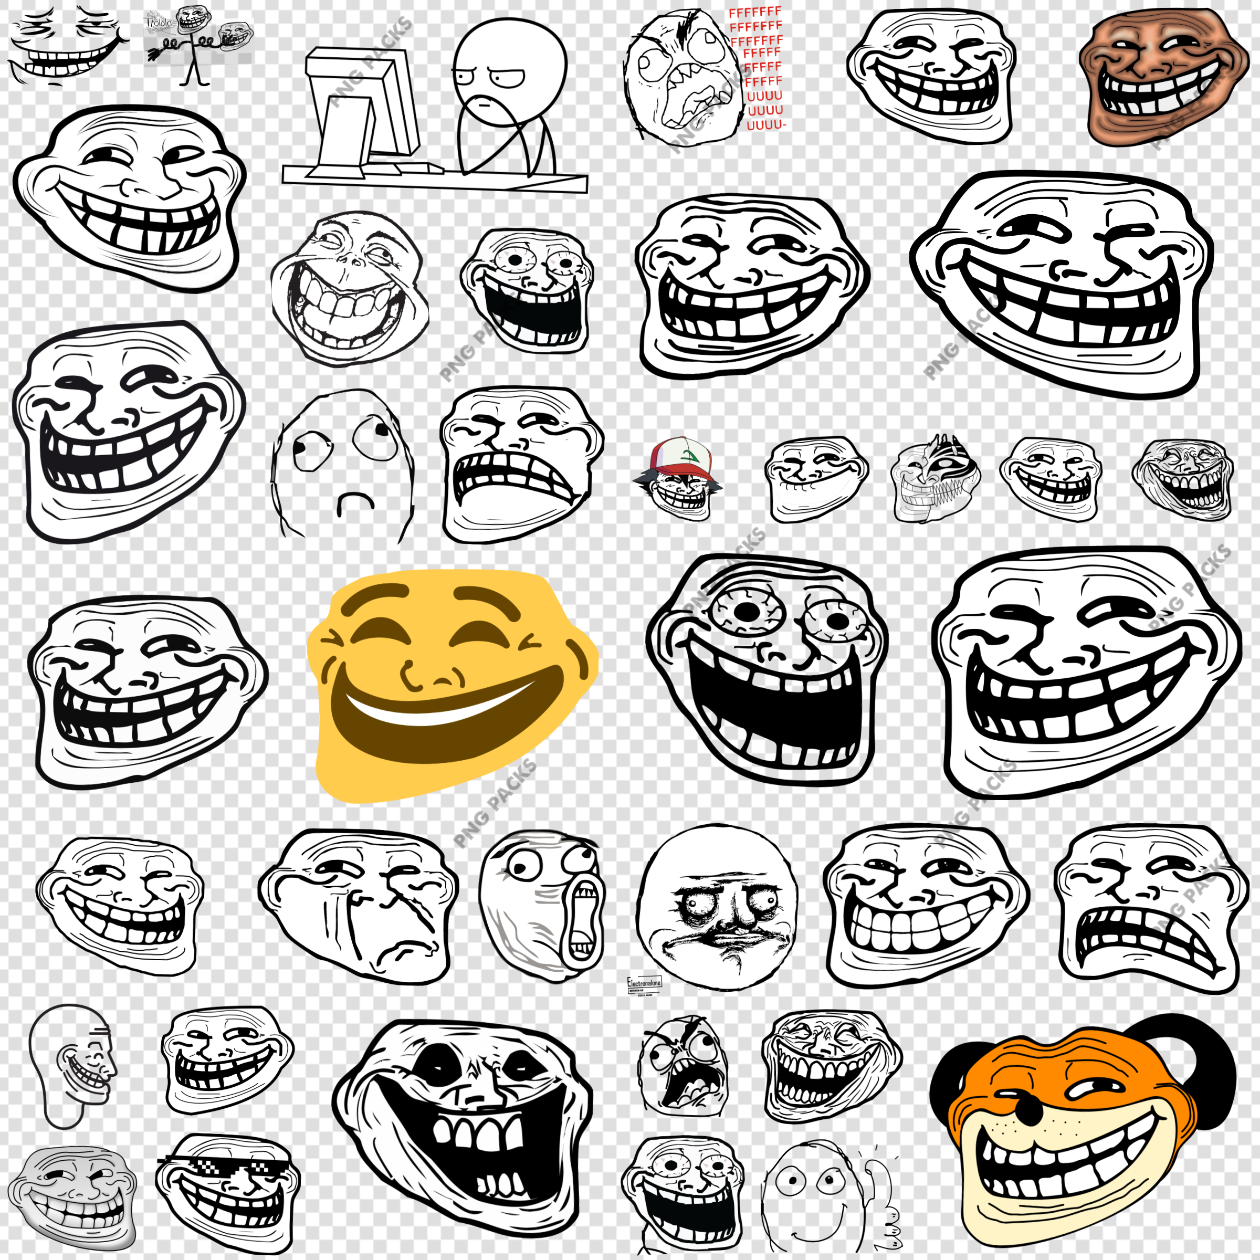 Trollface Internet Meme PNG Transparent Images Download - PNG Packs